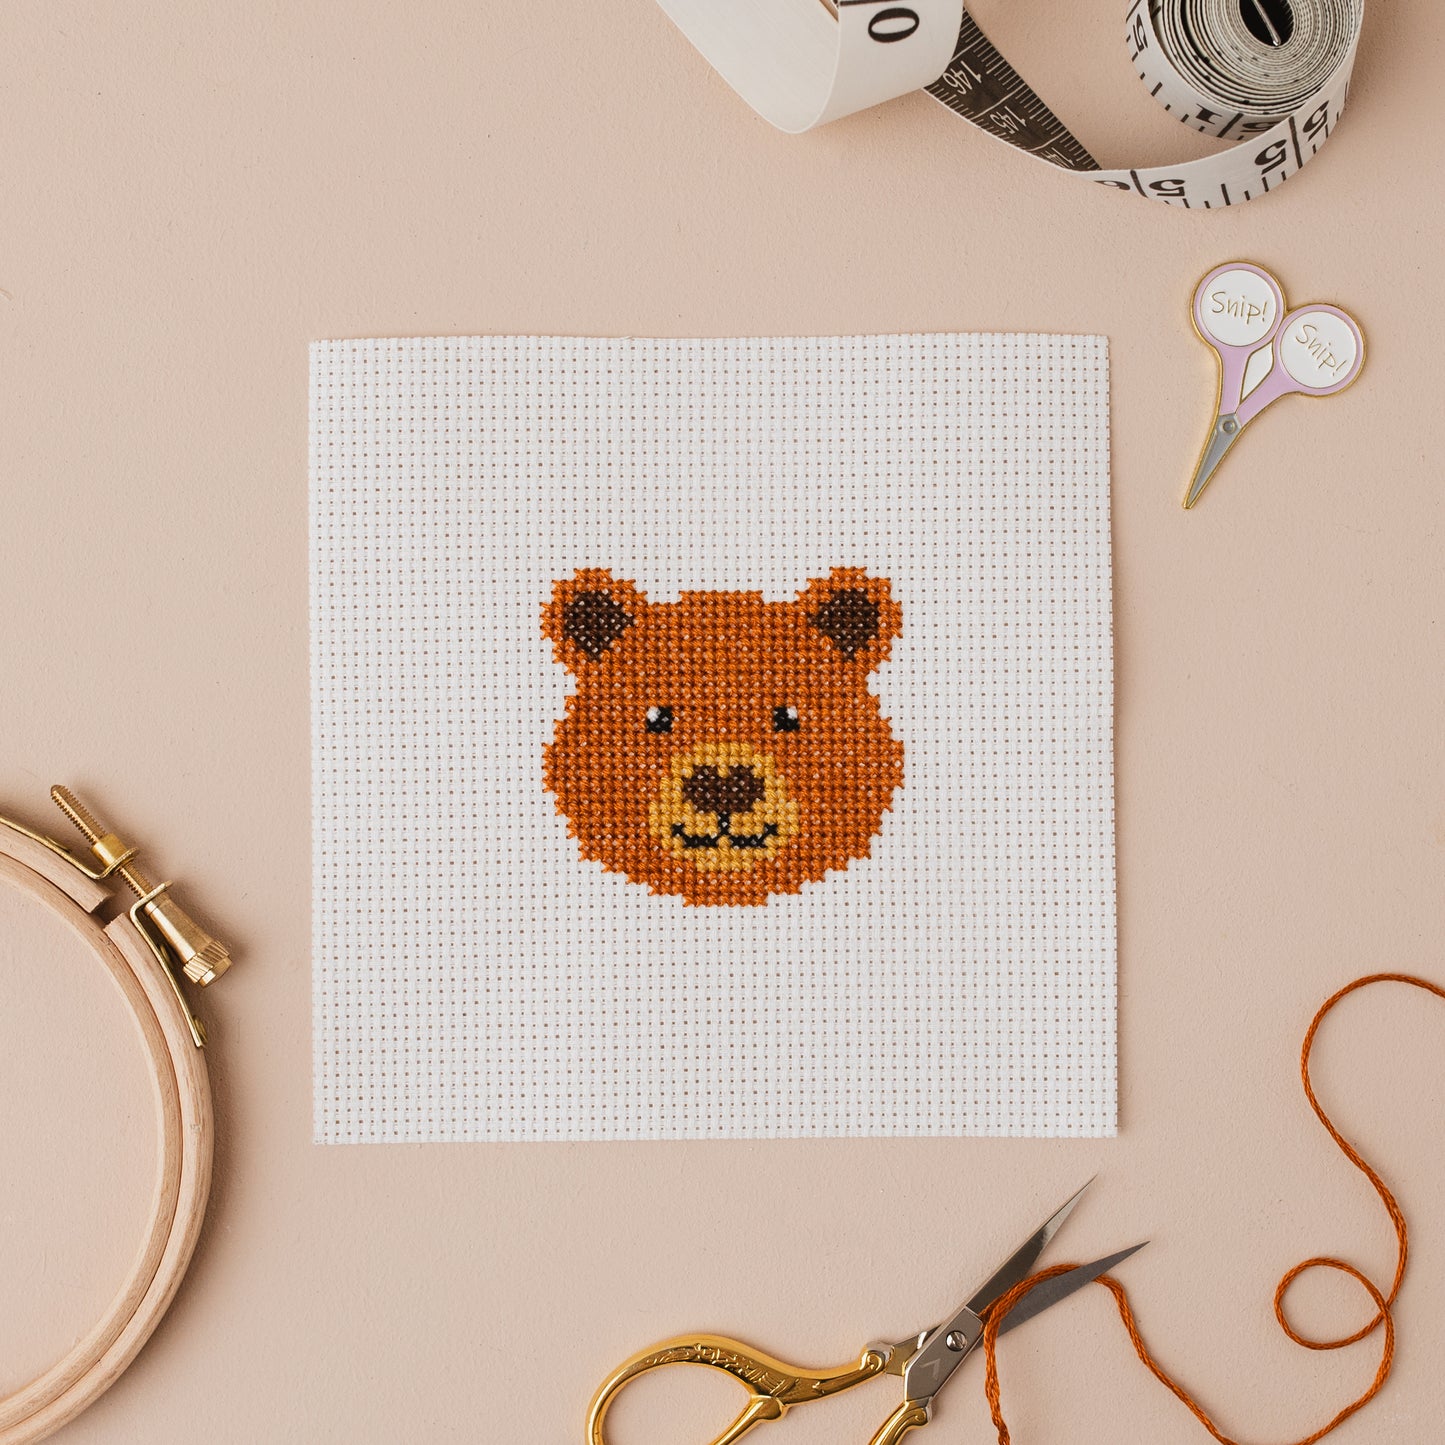 Bear Mini Counted Cross Stitch Kit